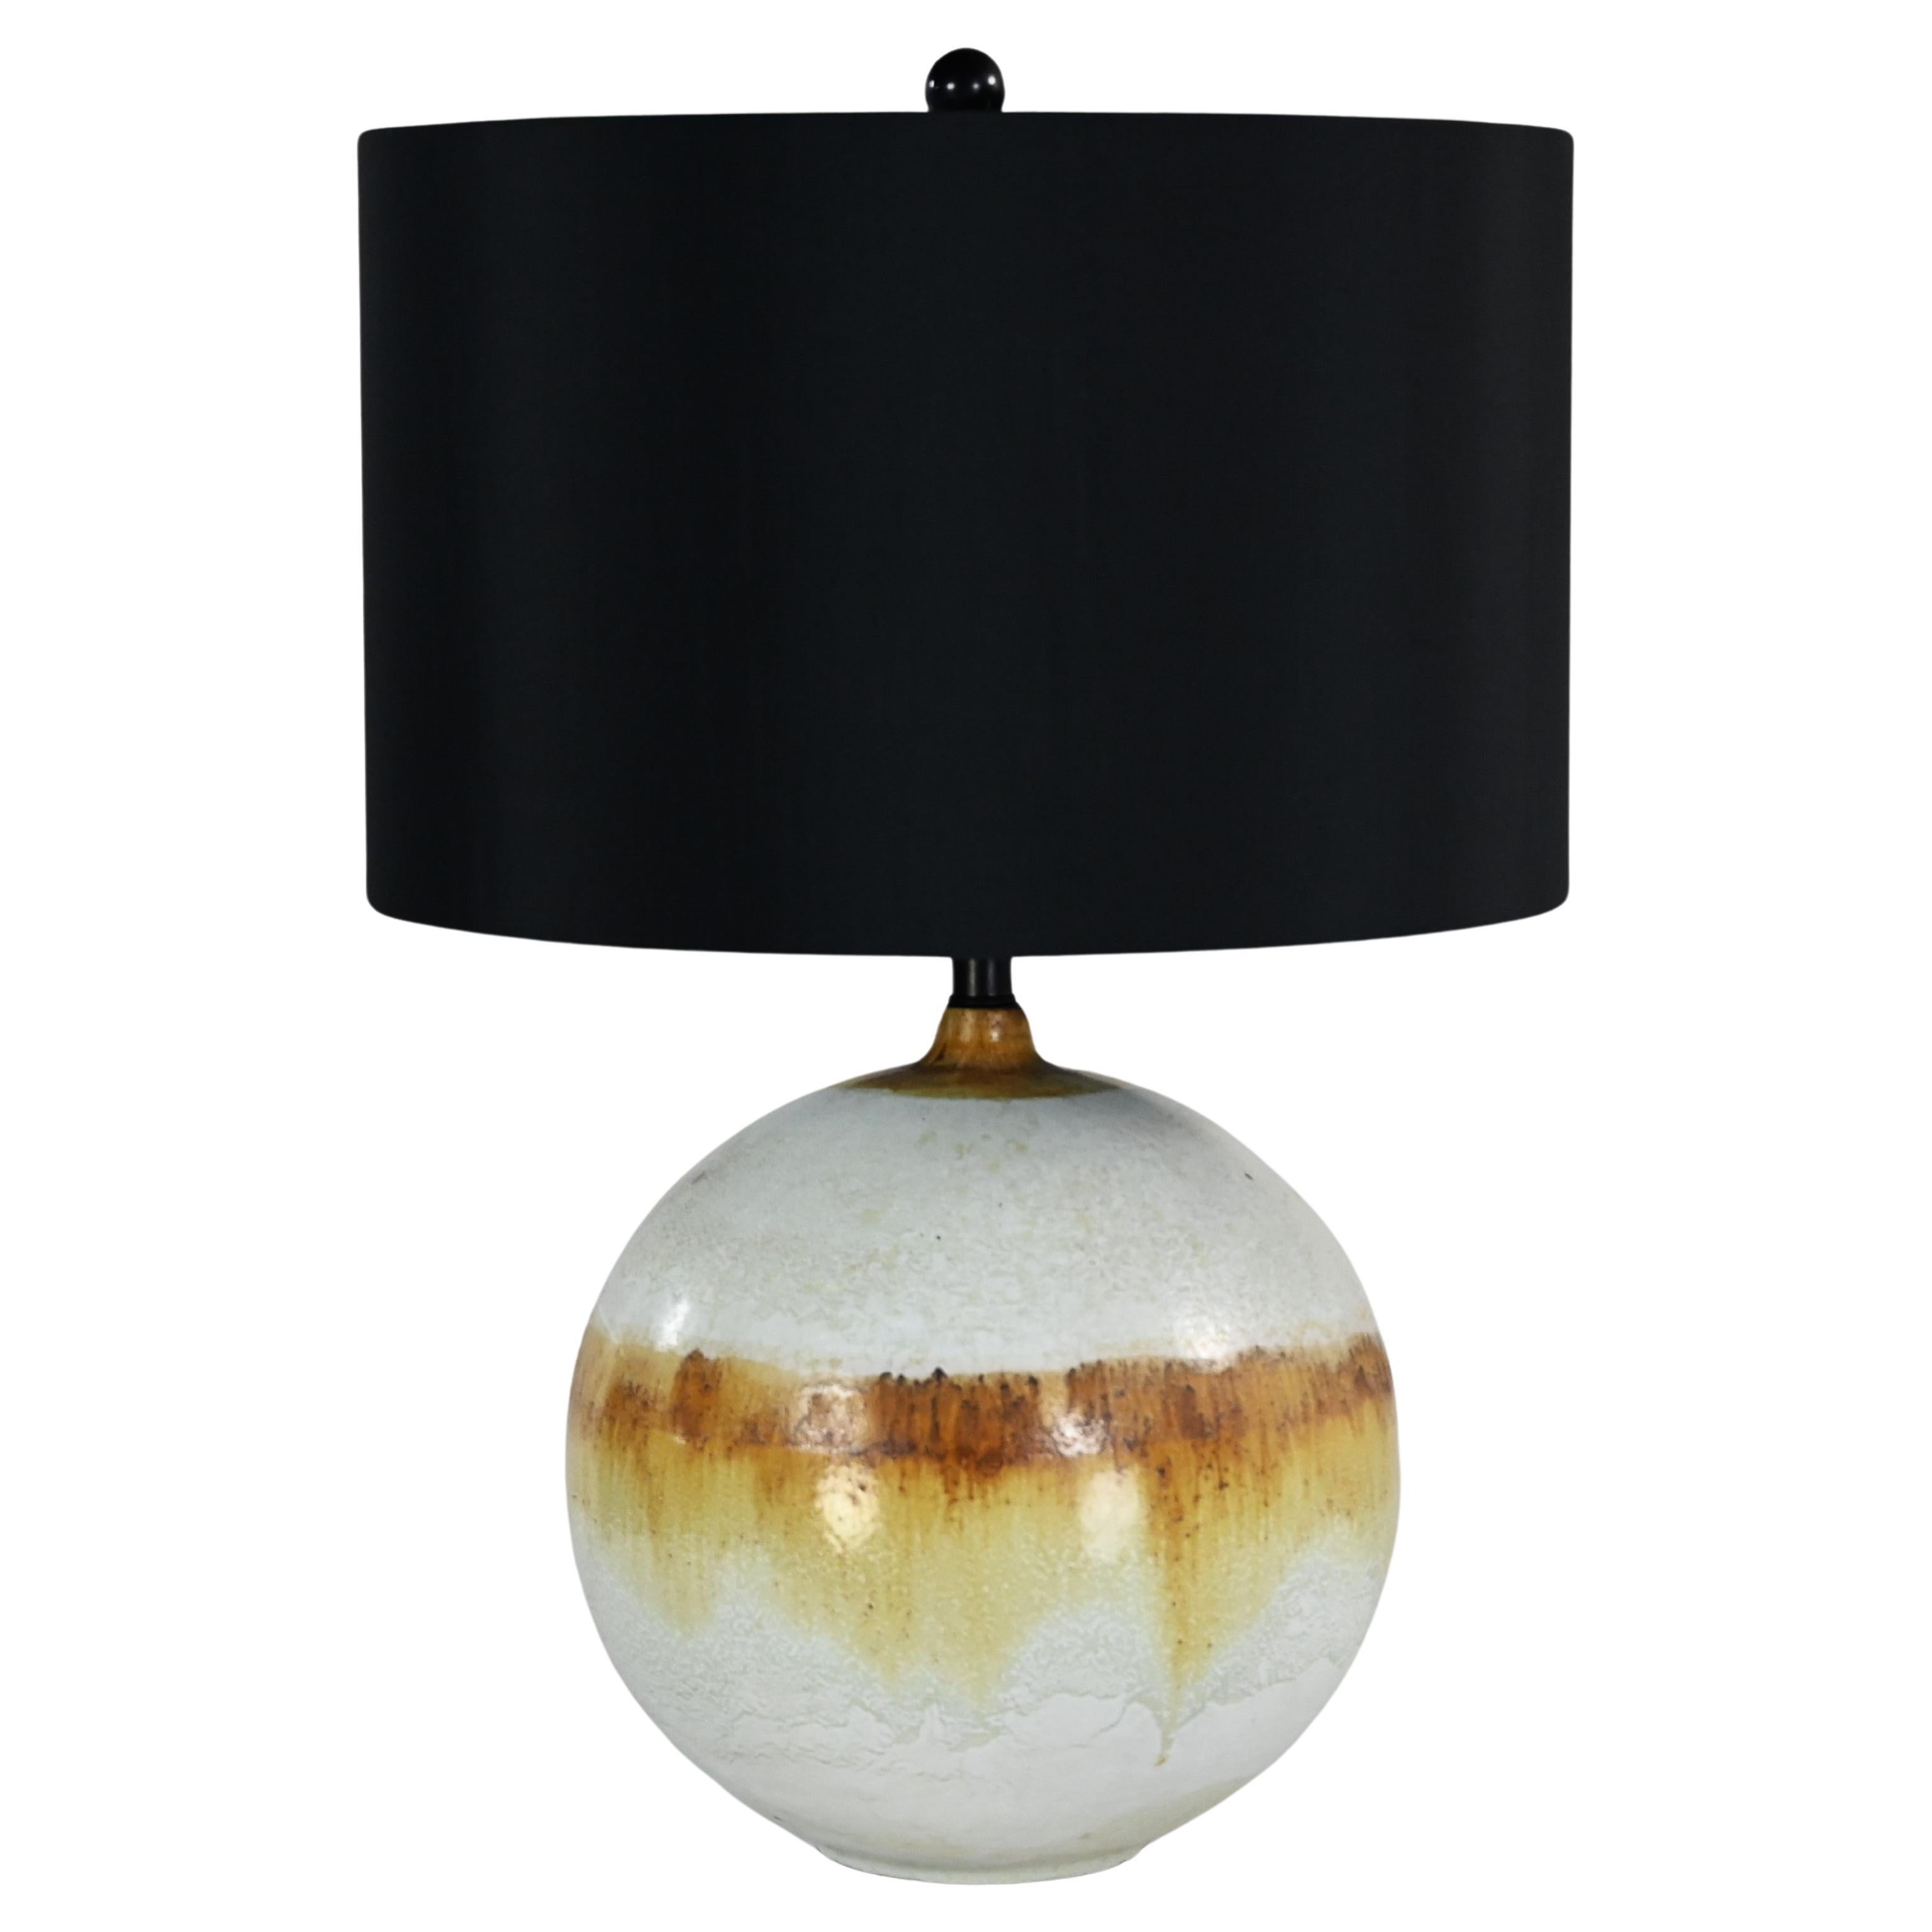 Mid-20th Century MCM Drip Glaze Ceramic Ball Lamp with New Black Shade (lampe boule en céramique avec abat-jour noir)